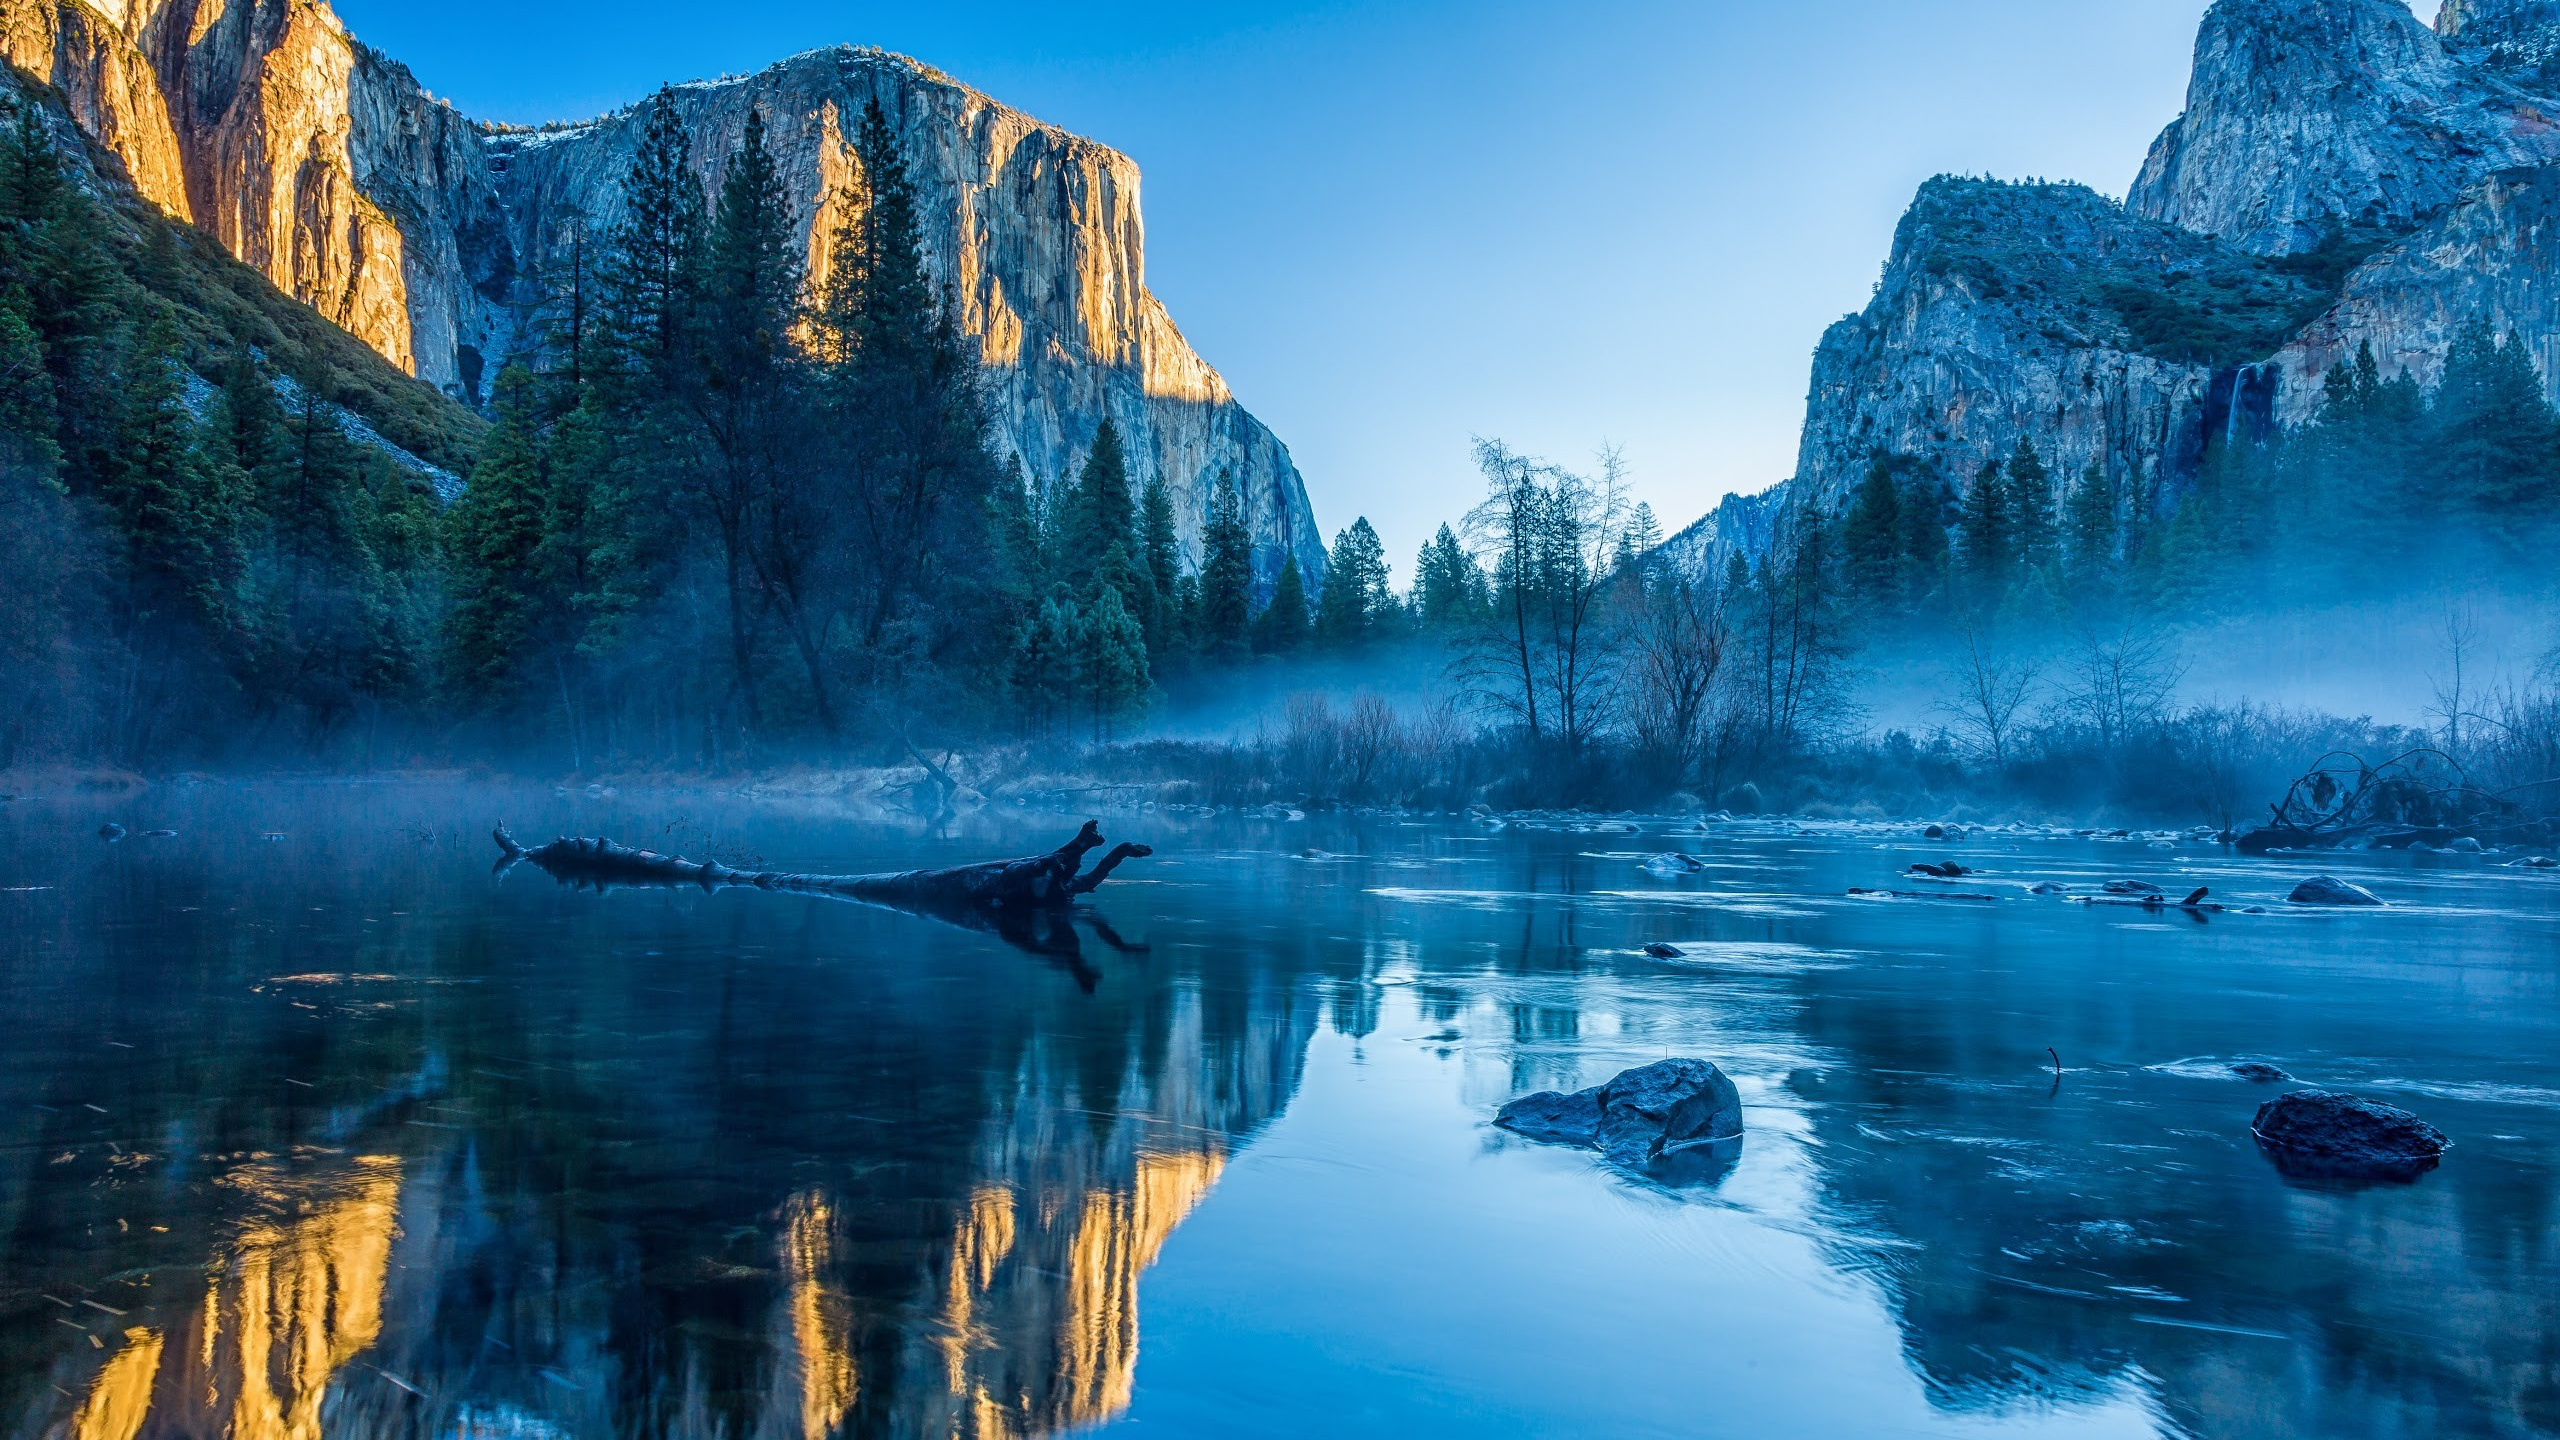 Download 2560x1440 Wallpaper Yosemite National Park, El Capitan